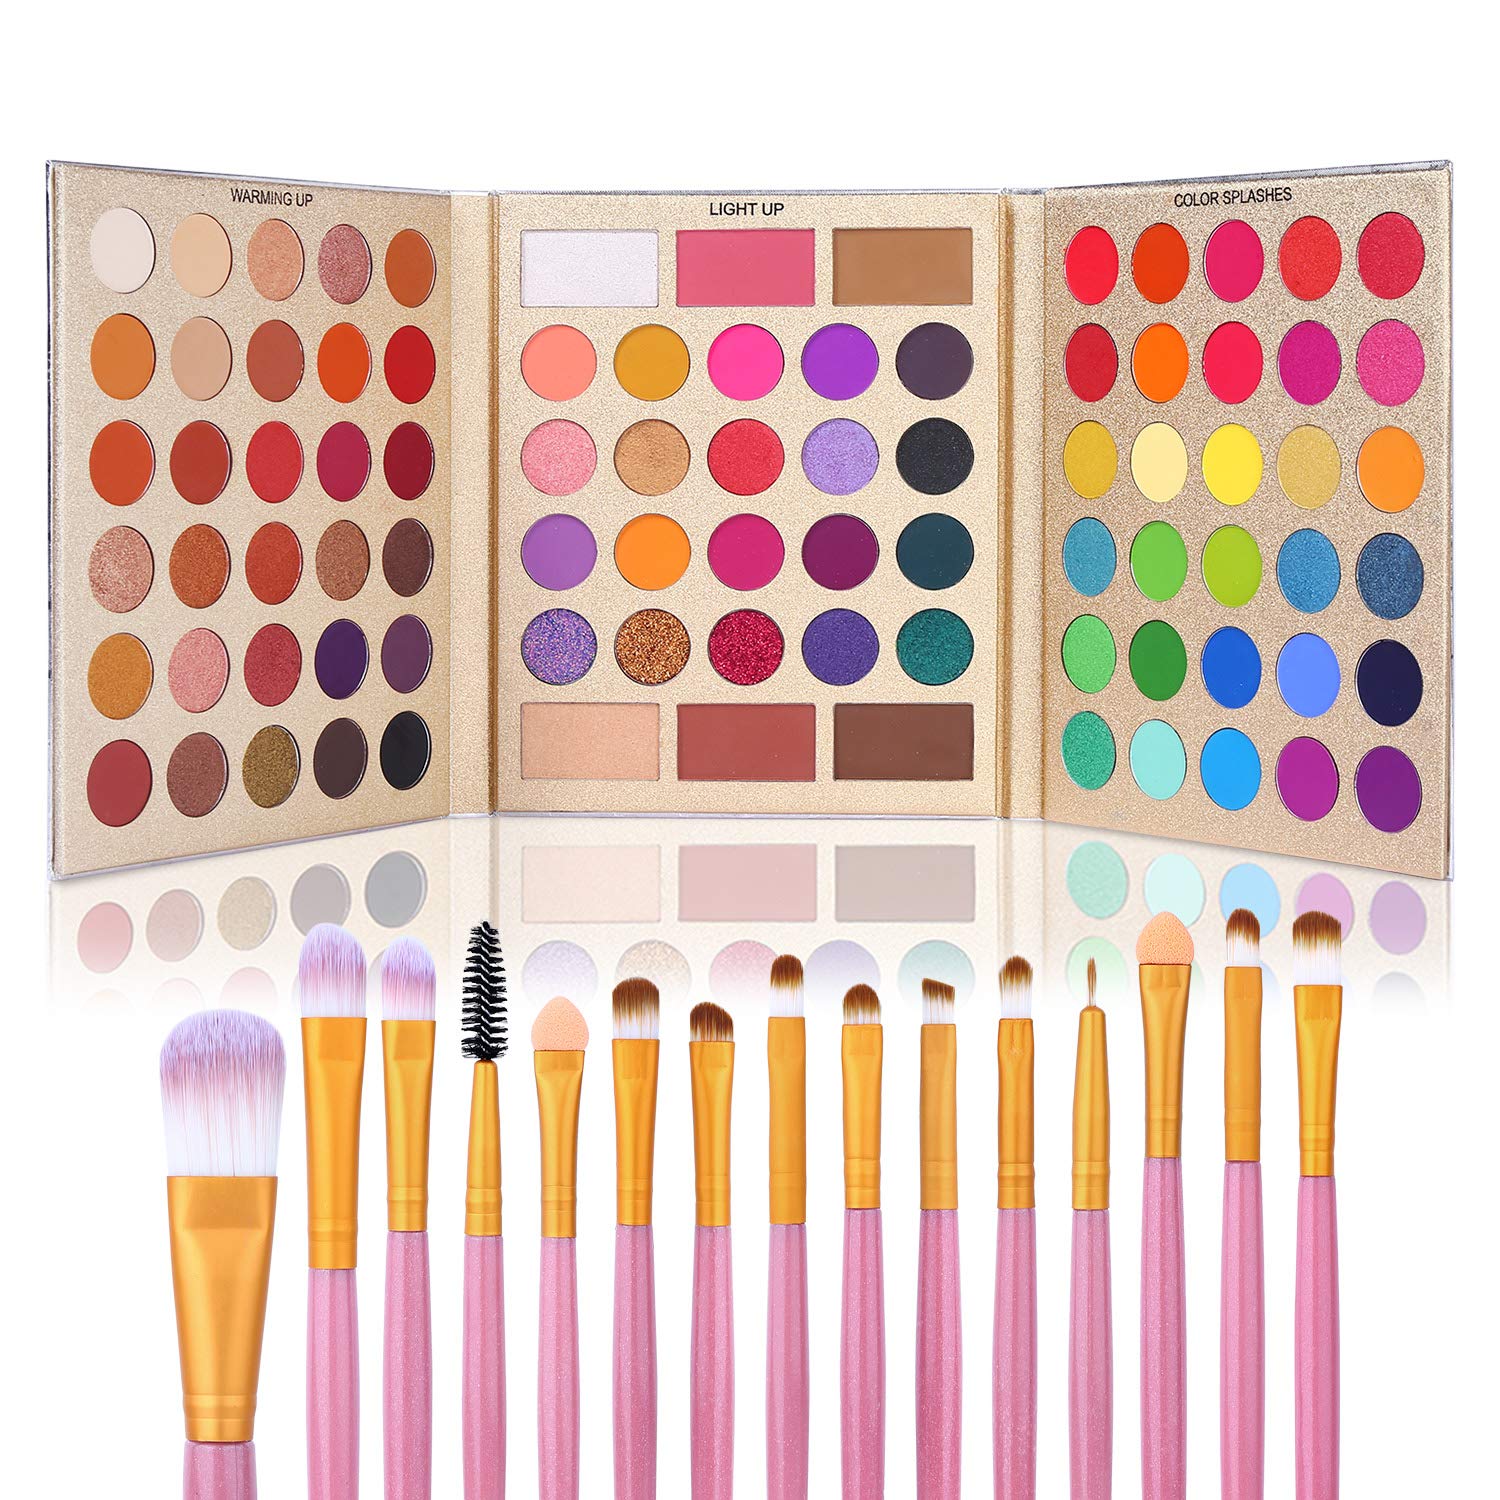 UCANBE Brush Set & Eyeshadow Palette Makeup Kit